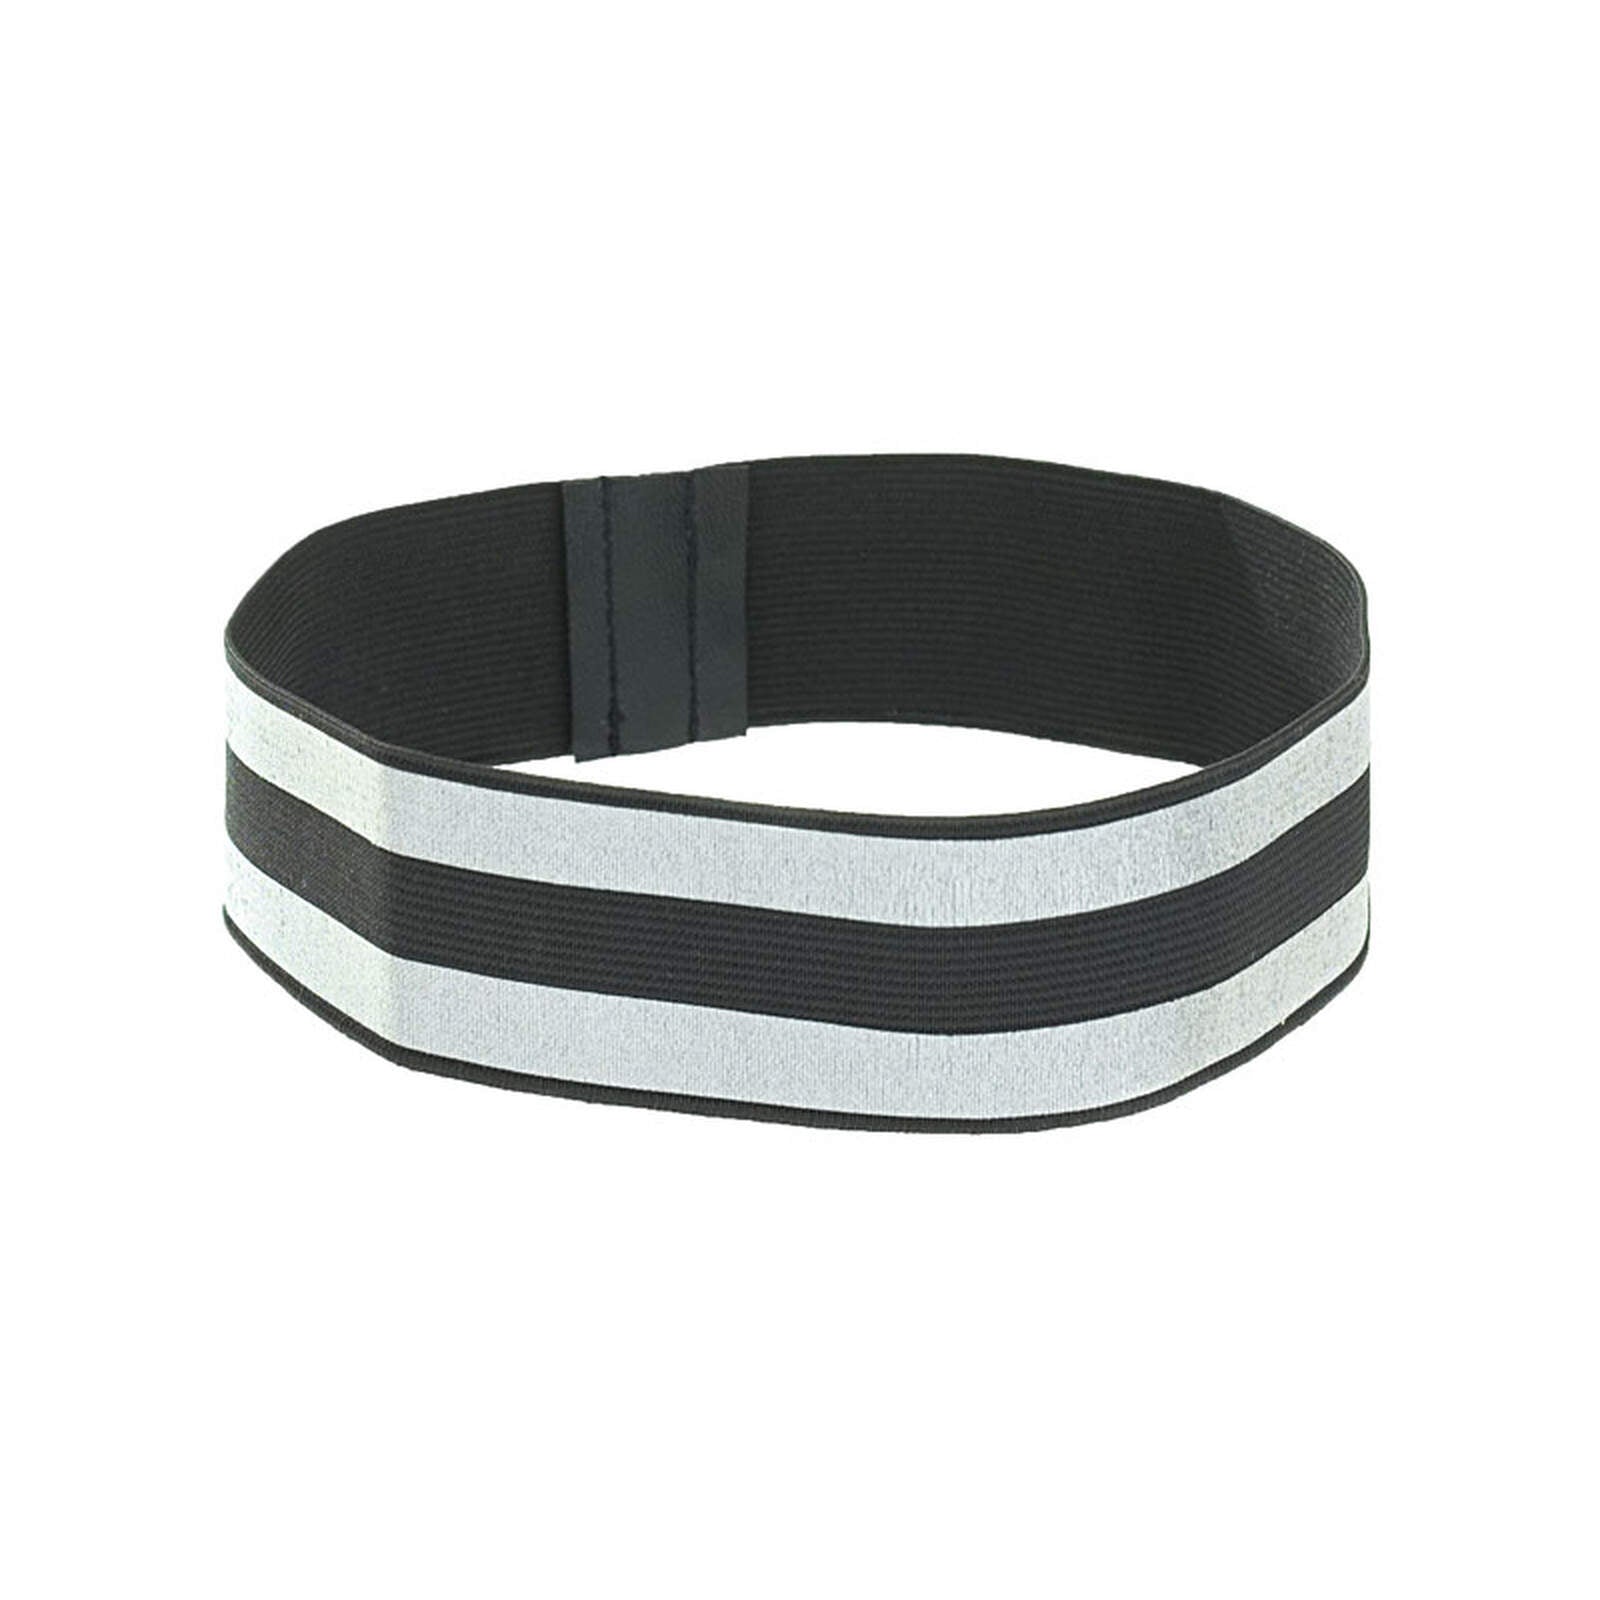 Helmband bZeen reflektierend schwarz one size